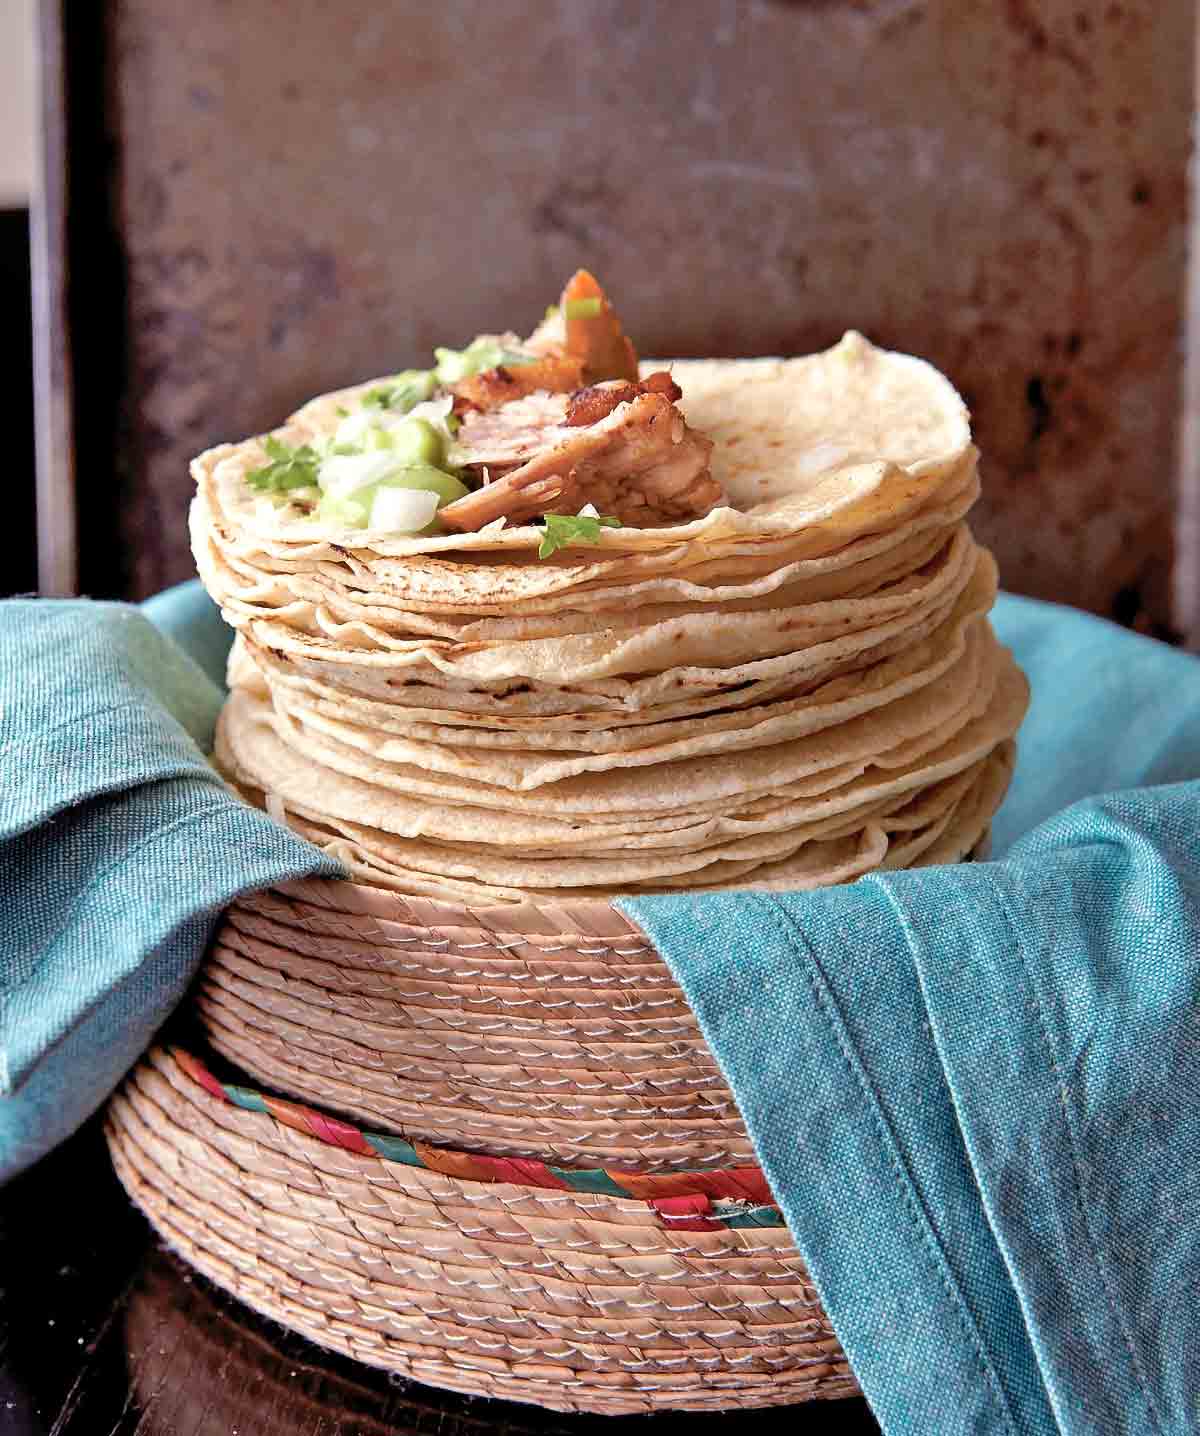 En hög med mjuka tortillas toppade med carnitas, lök, guacamole och koriander.  De vilar i en vävd korg på en hög med blå servetter.